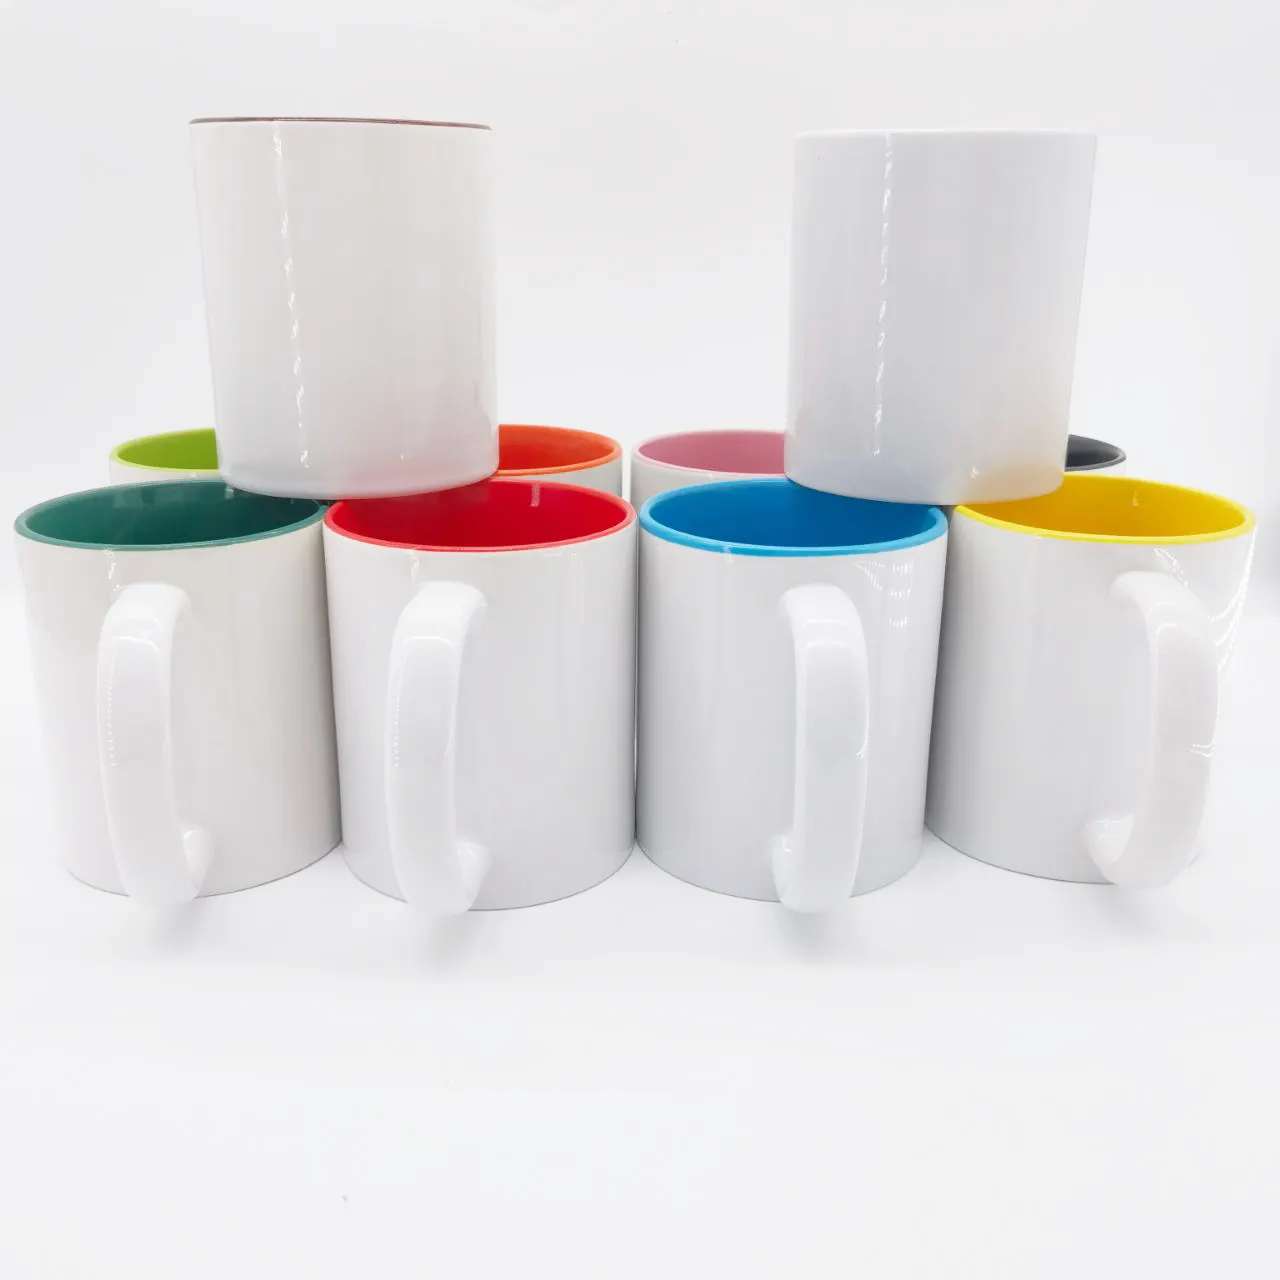 Logotipo personalizado de marca de café, taza de té personalizada de lujo, Taza de cerámica de café reutilizable, almacén de EE. UU.